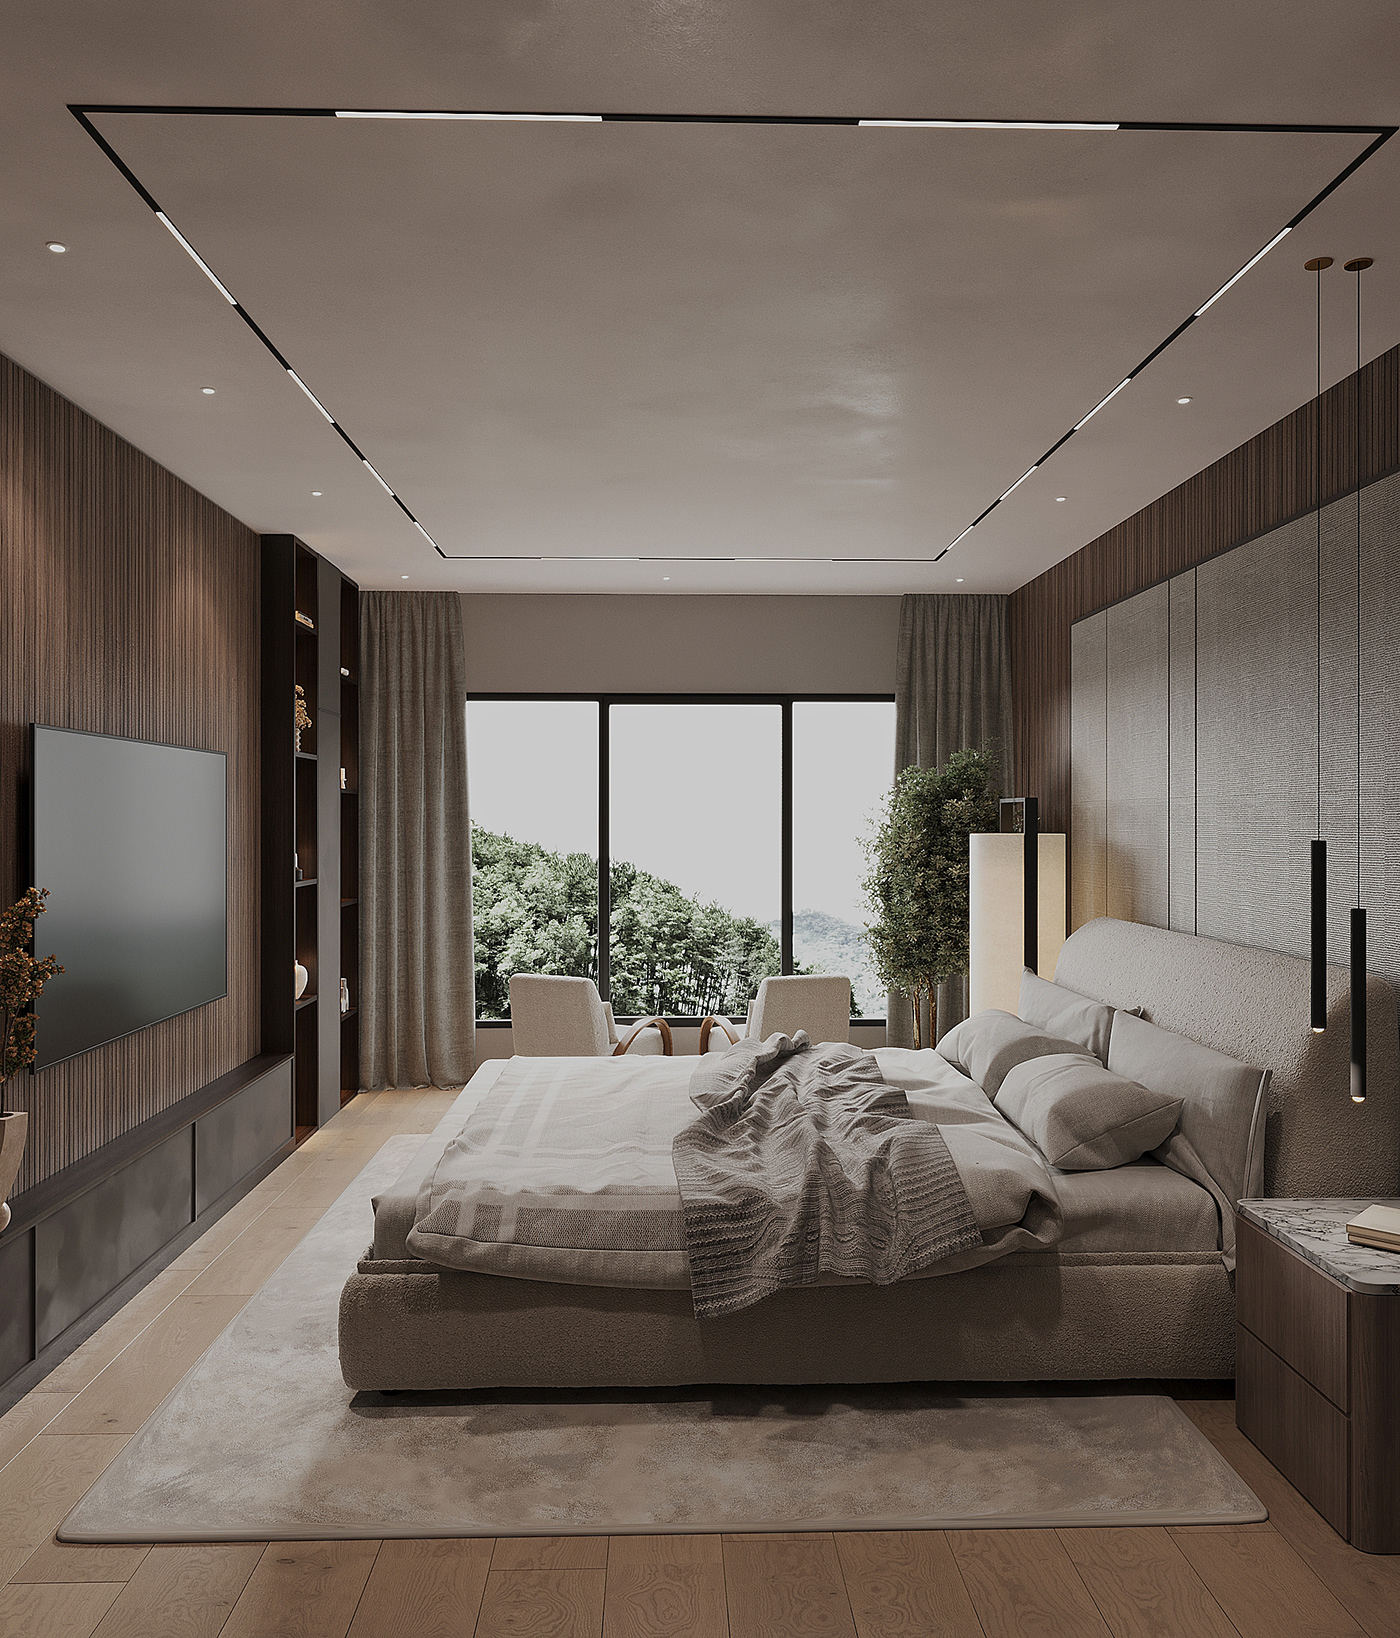 3dsmax visualization Render interior design  architecture corona design